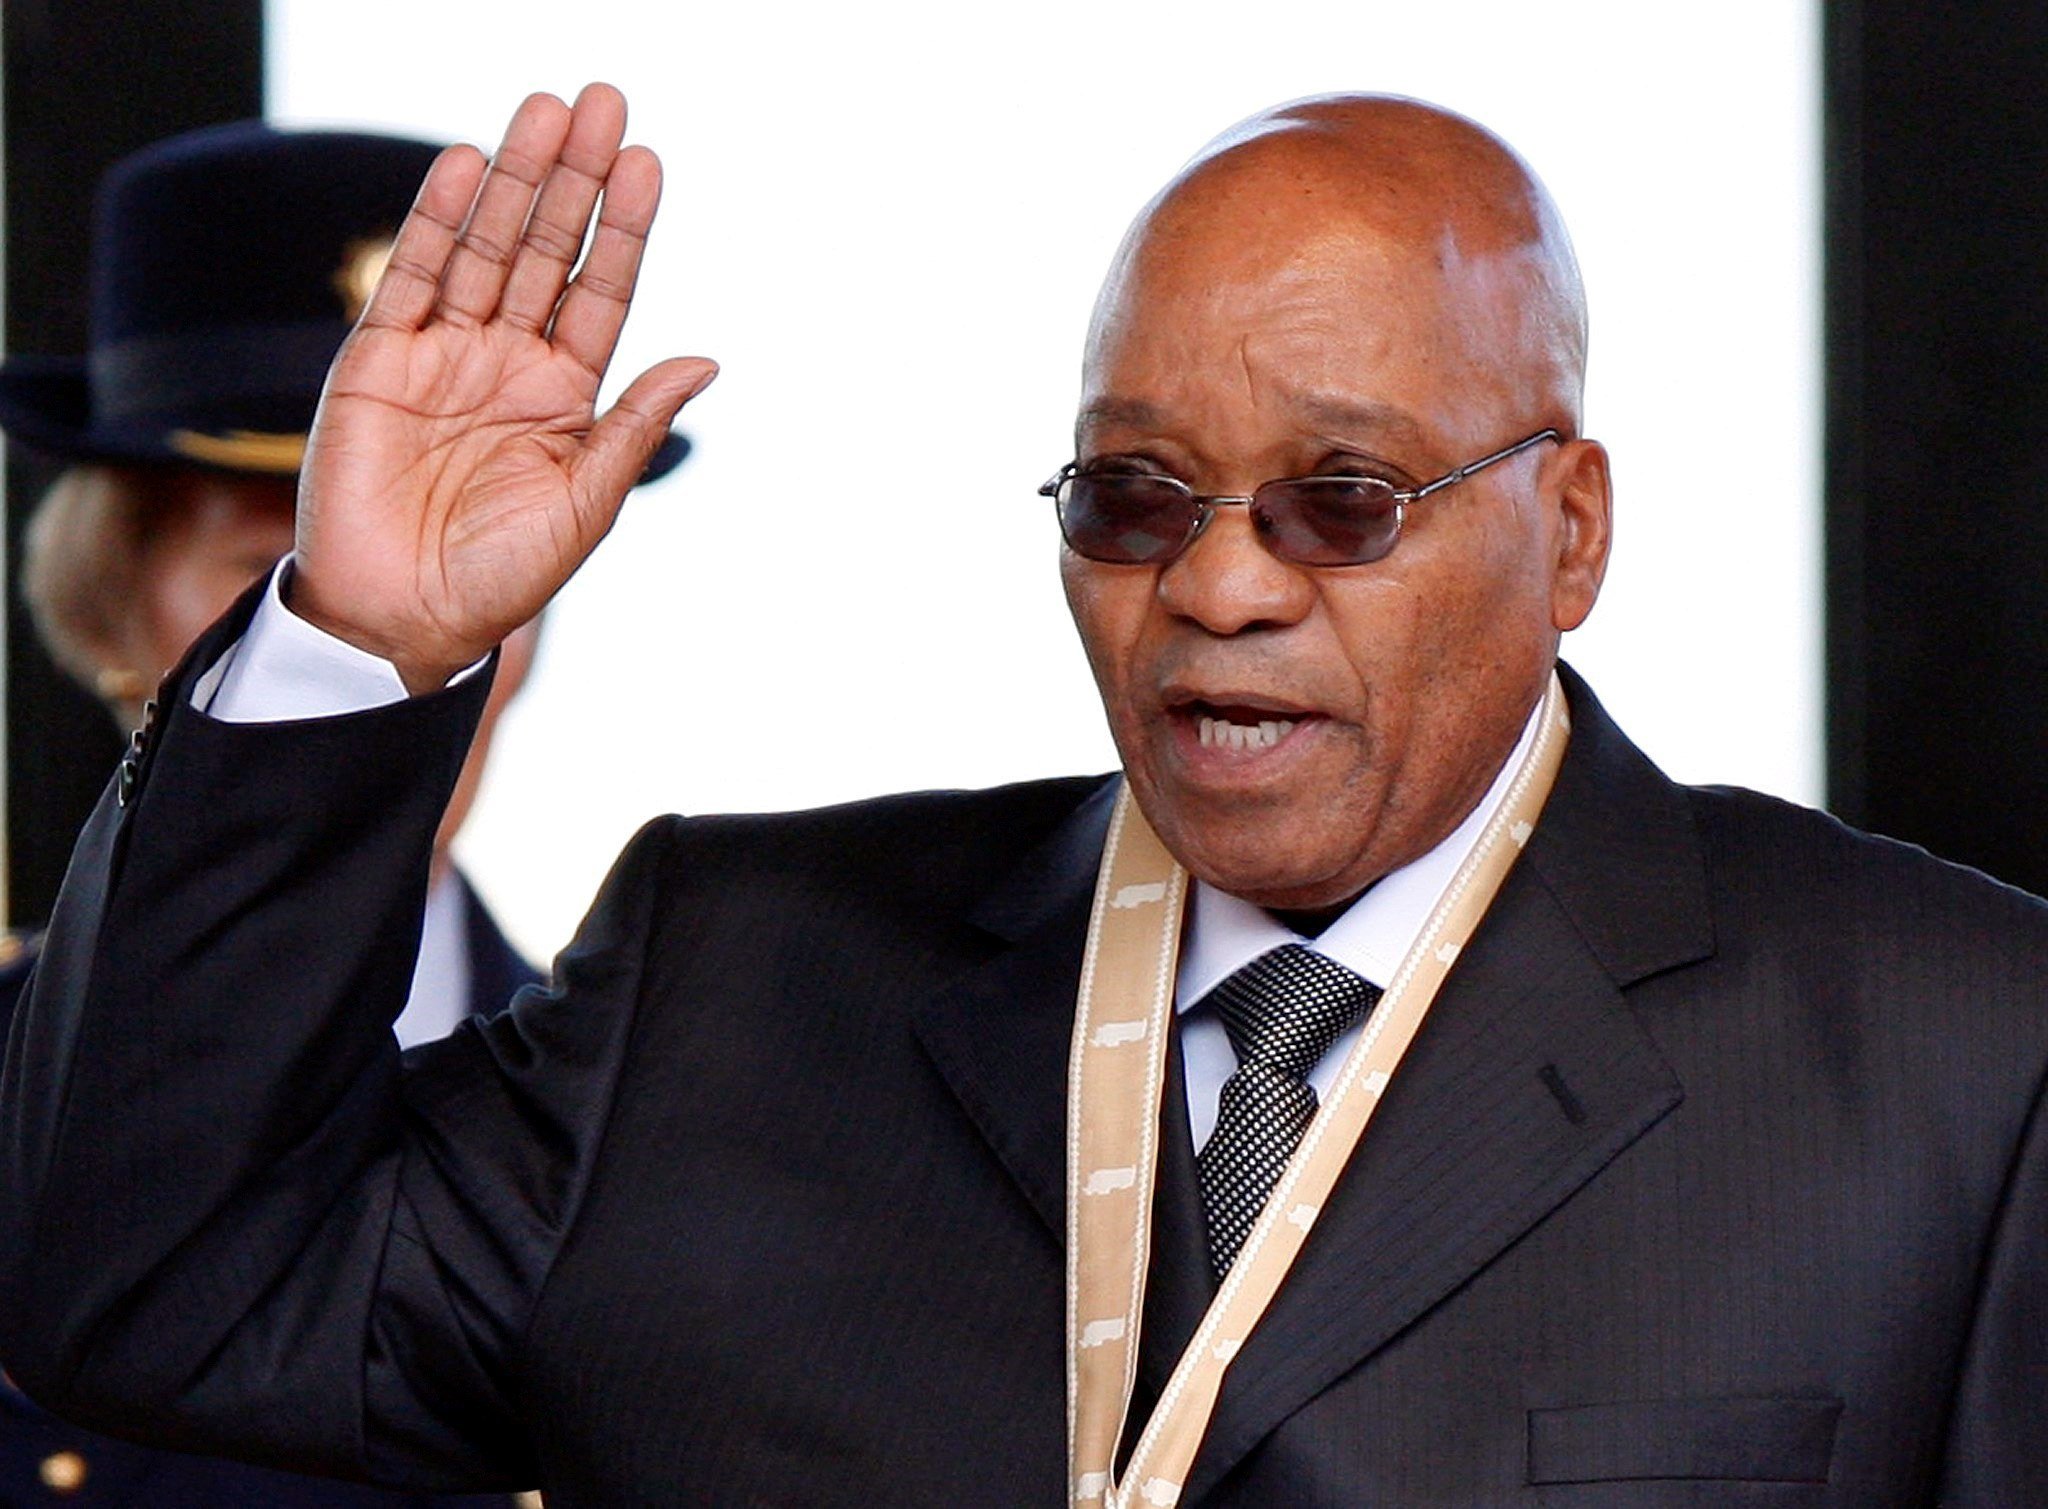 El Congrés Nacional Africà insta el president Zuma a dimitir